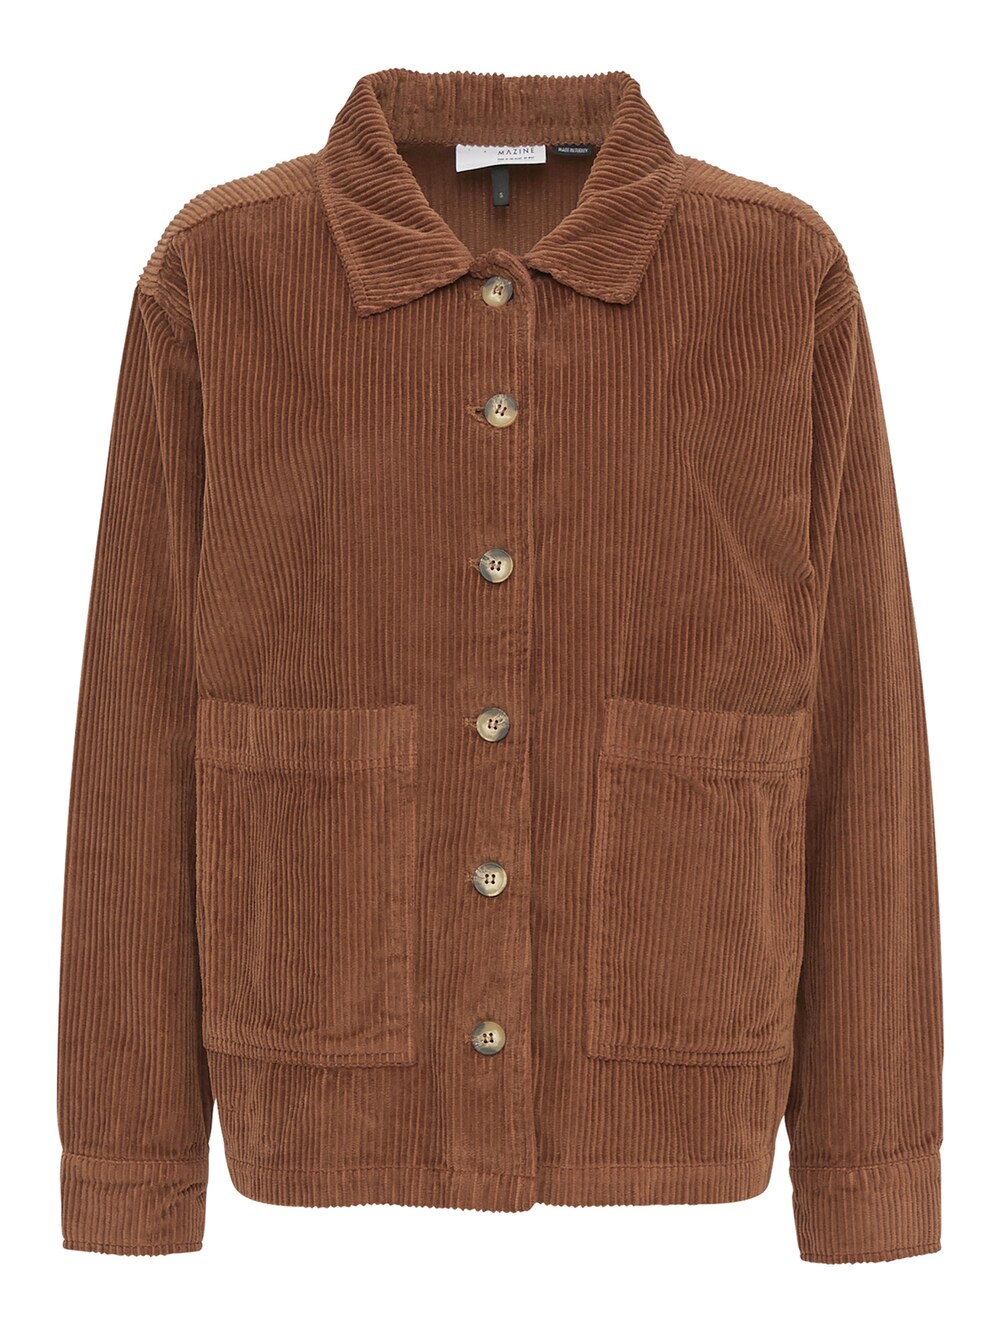 Межсезонная куртка mazine Naica Shacket, коричневый